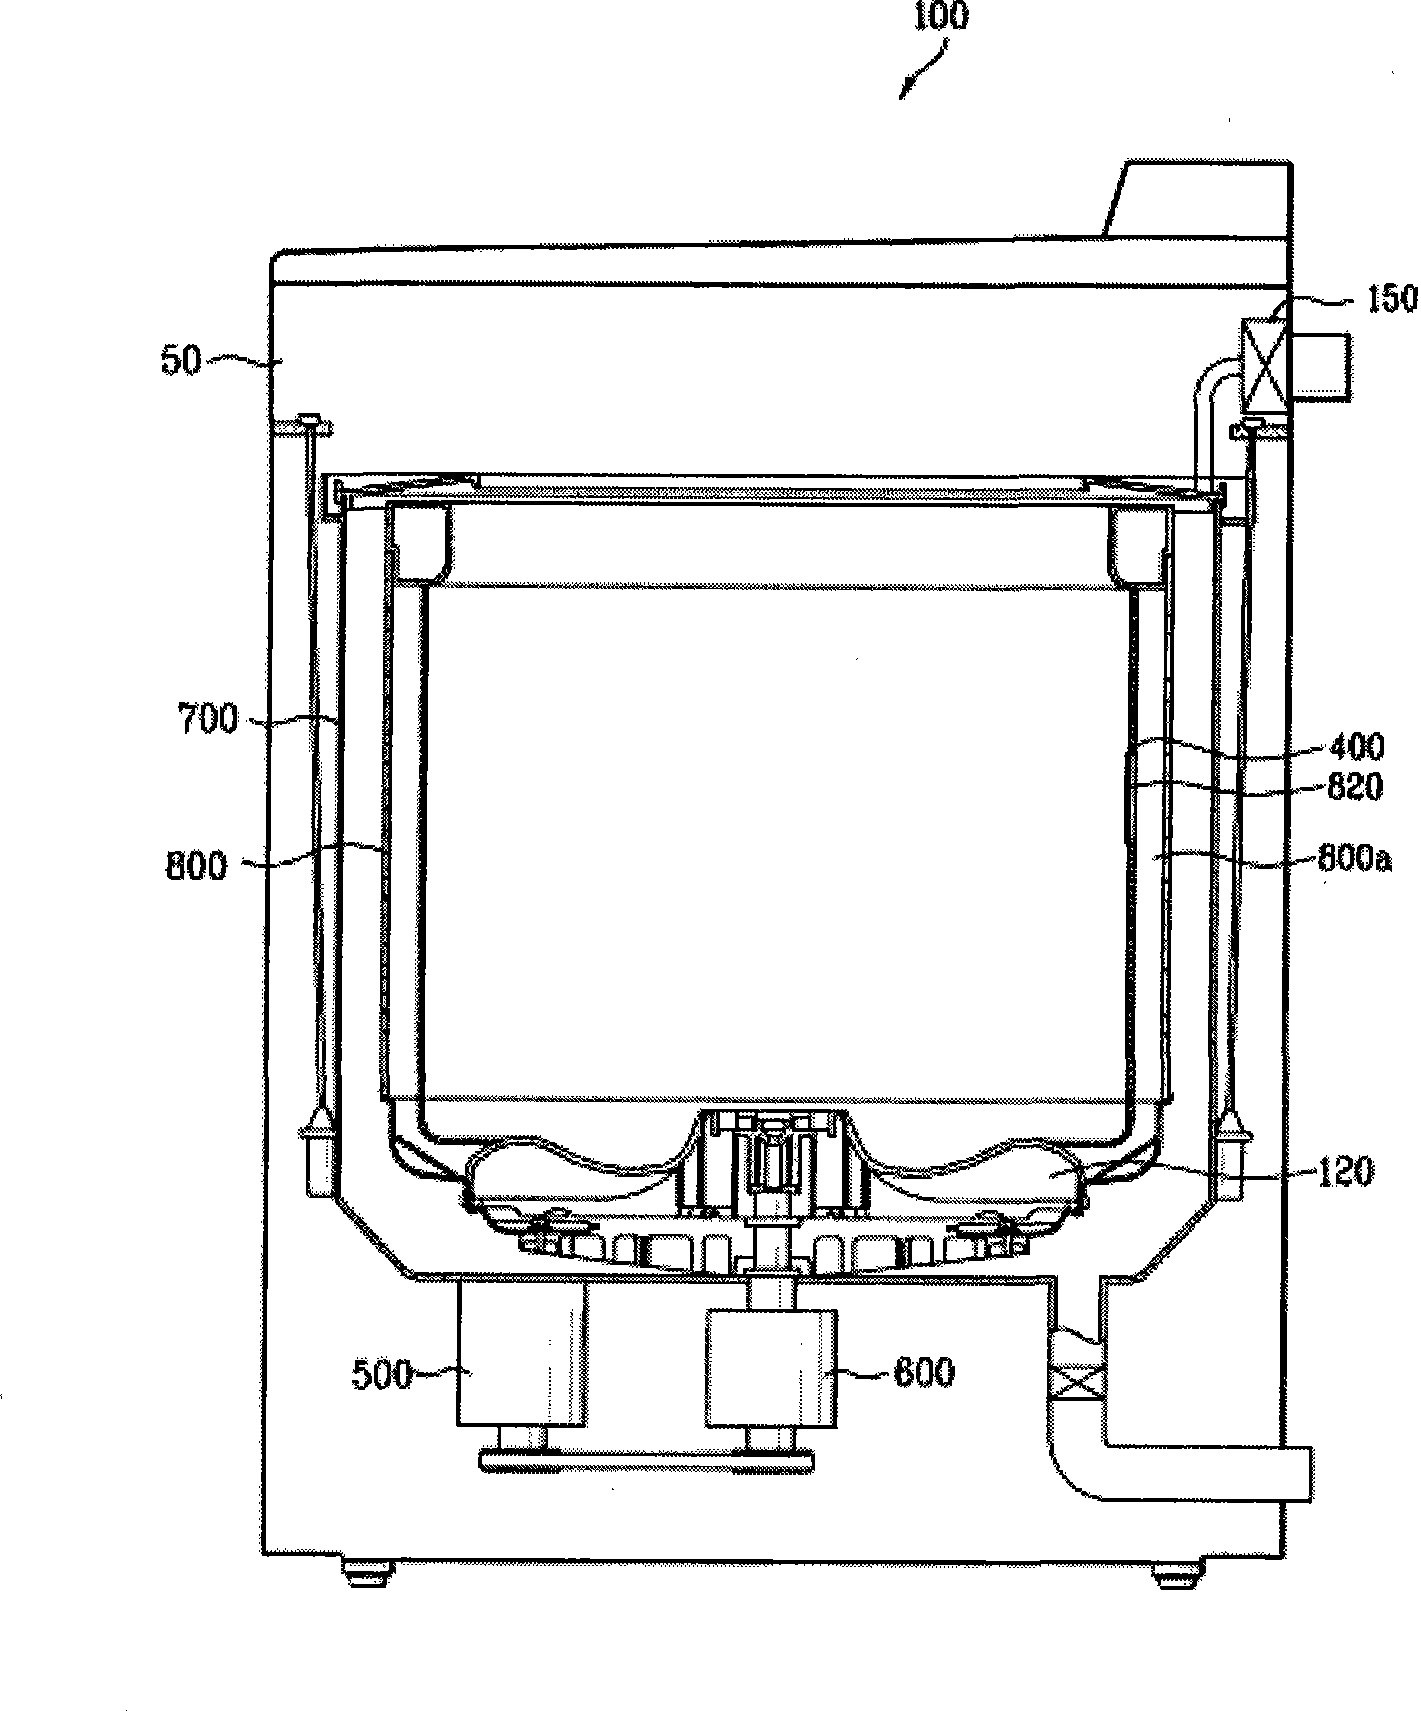 Filtering apparatus of washing machine